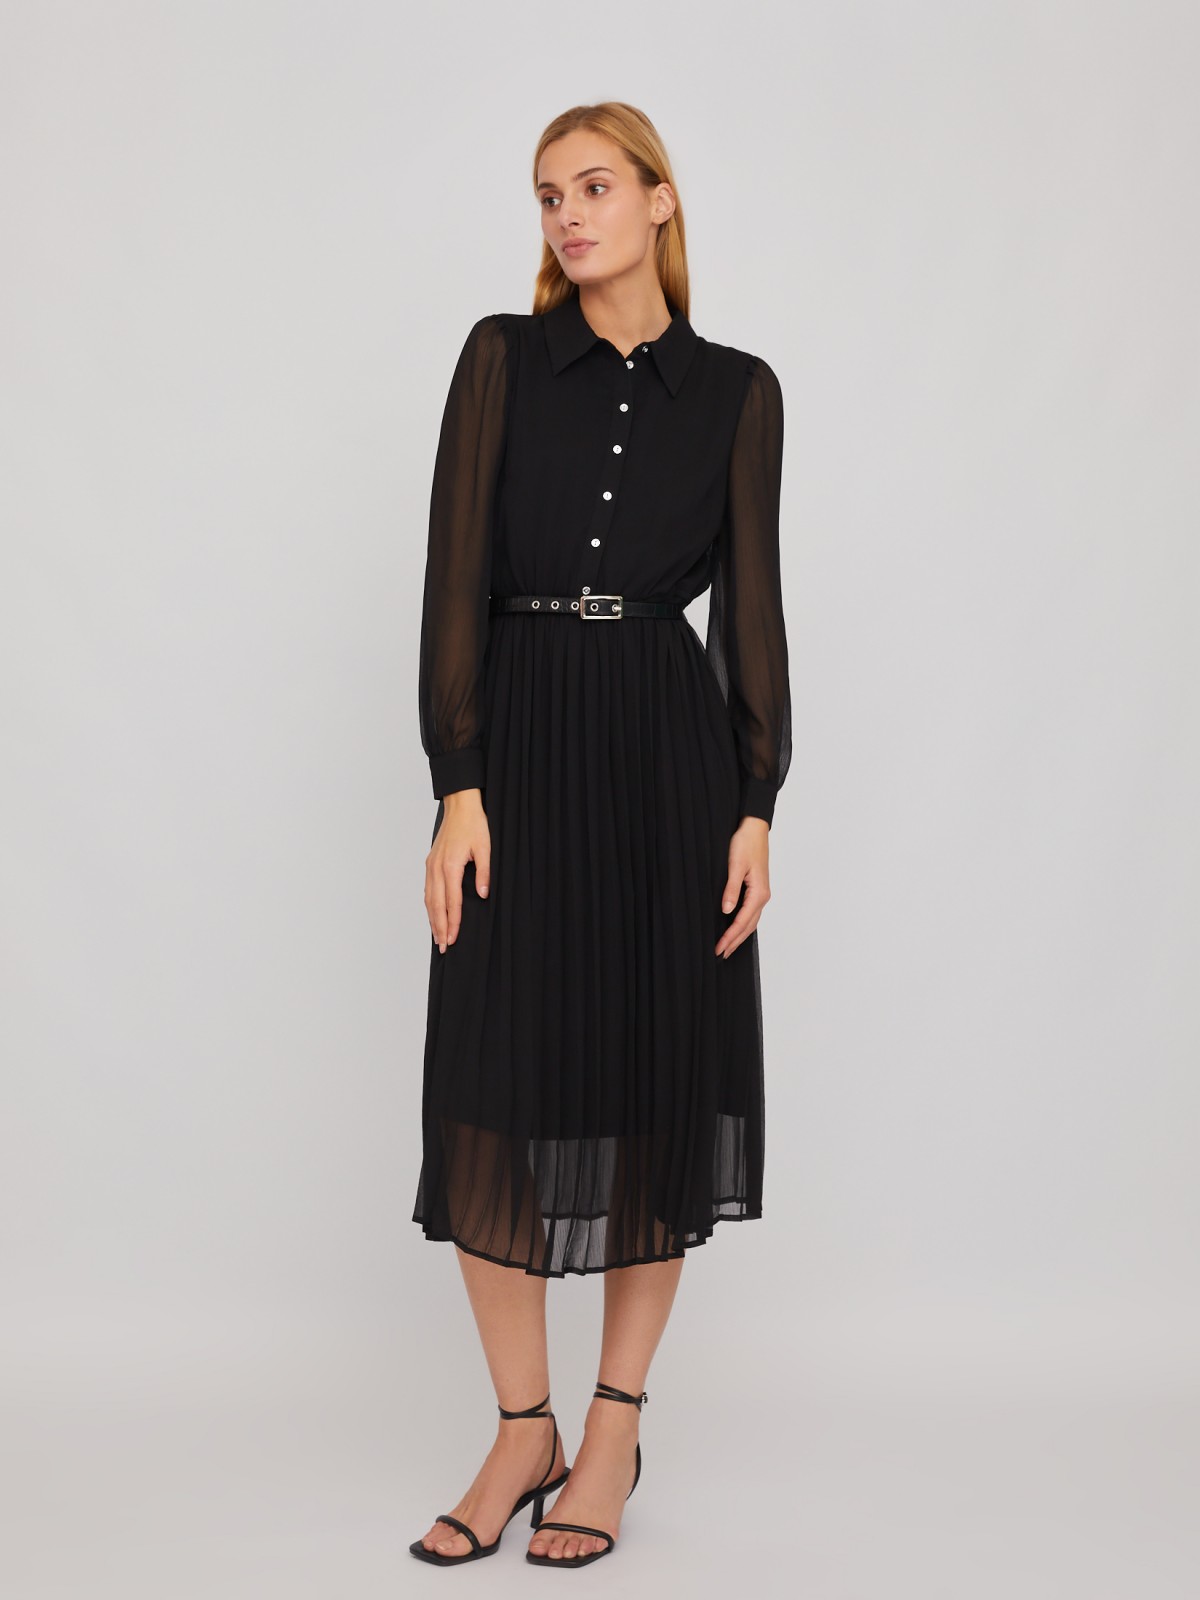 Шифоновое платье-рубашка длины миди с плиссировкой и акцентном на талии zolla 024118262033, цвет черный, размер S - фото 2